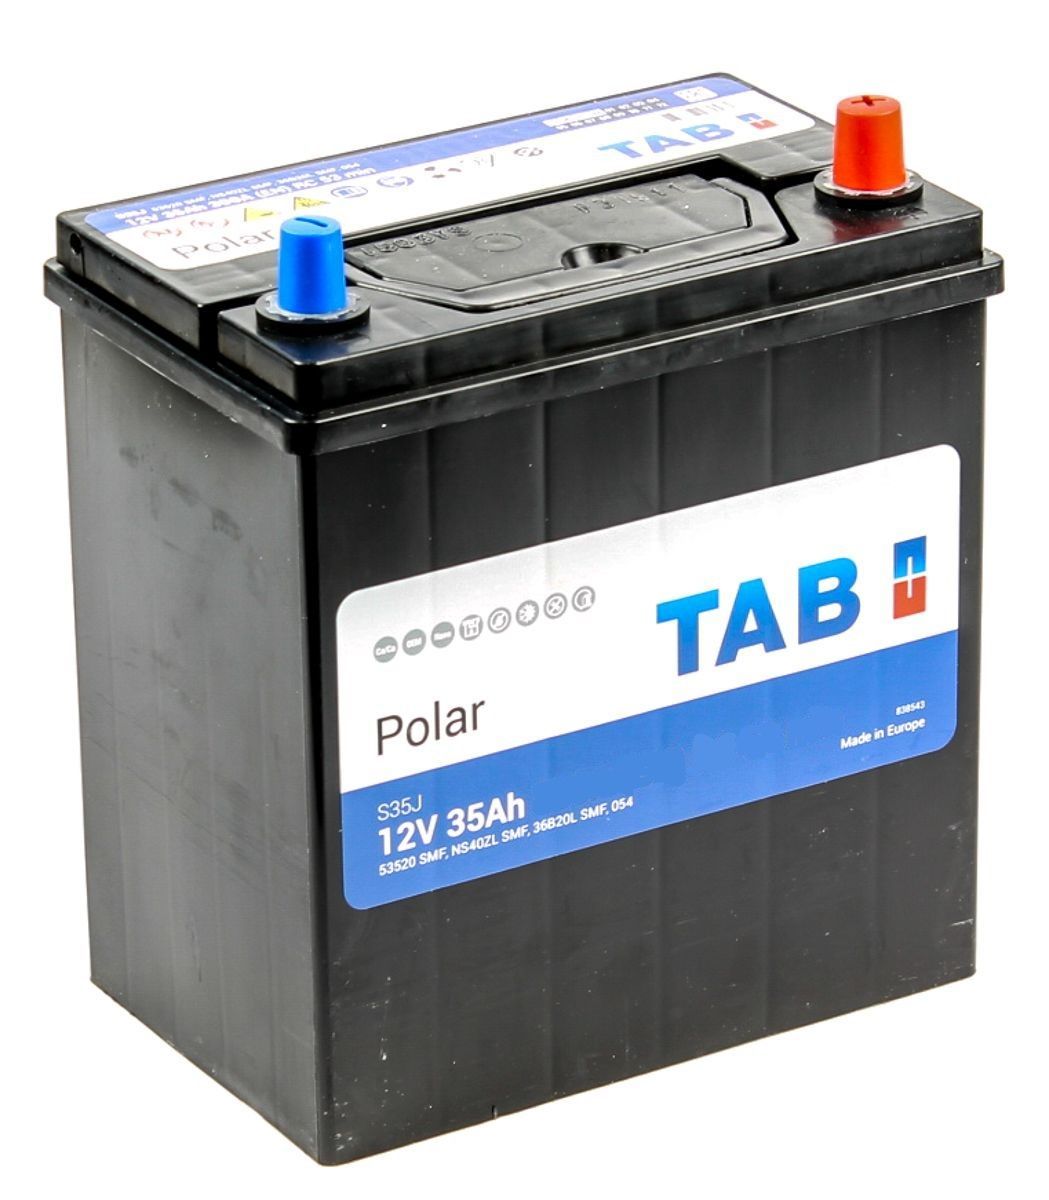 Аккумулятор автомобильный TAB Polar 6СТ-35.0 (53520) яп.. ст./тонк. клеммы